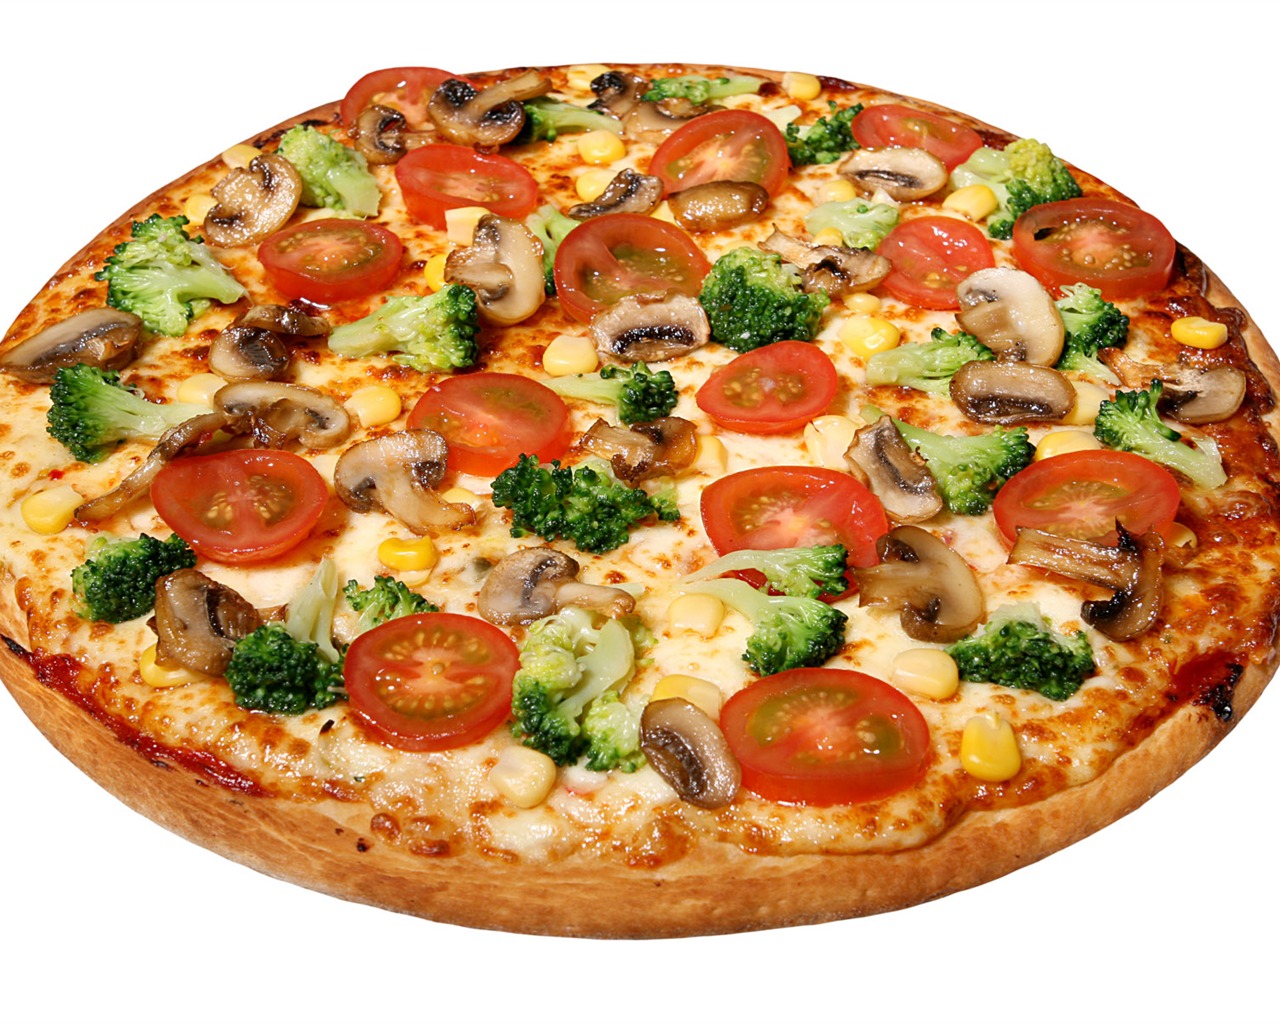 Fondos de pizzerías de Alimentos (4) #18 - 1280x1024